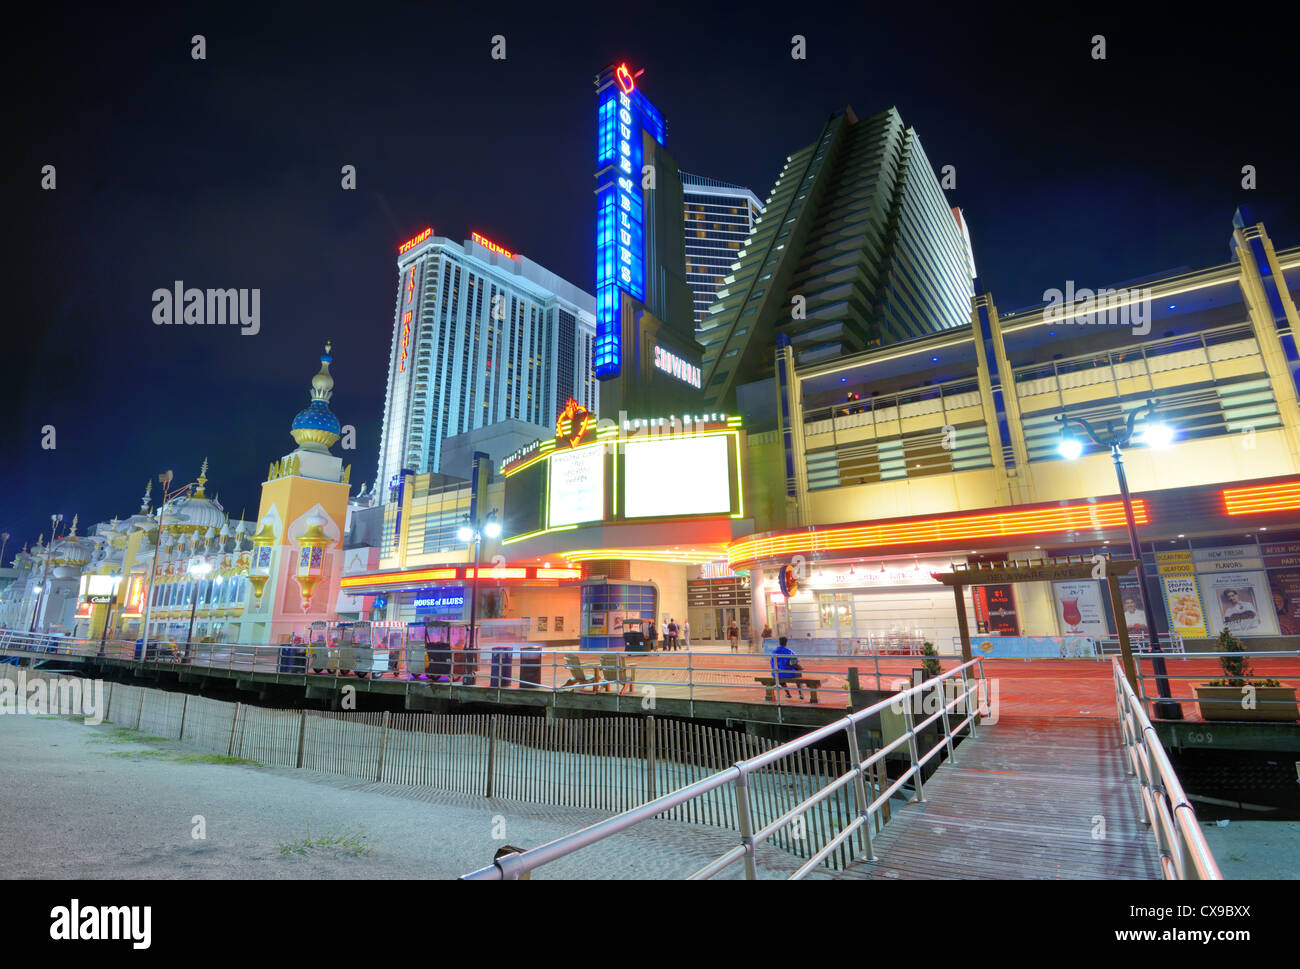 Casinos célèbre le long de la promenade d'Atlantic City, New Jersey. Banque D'Images